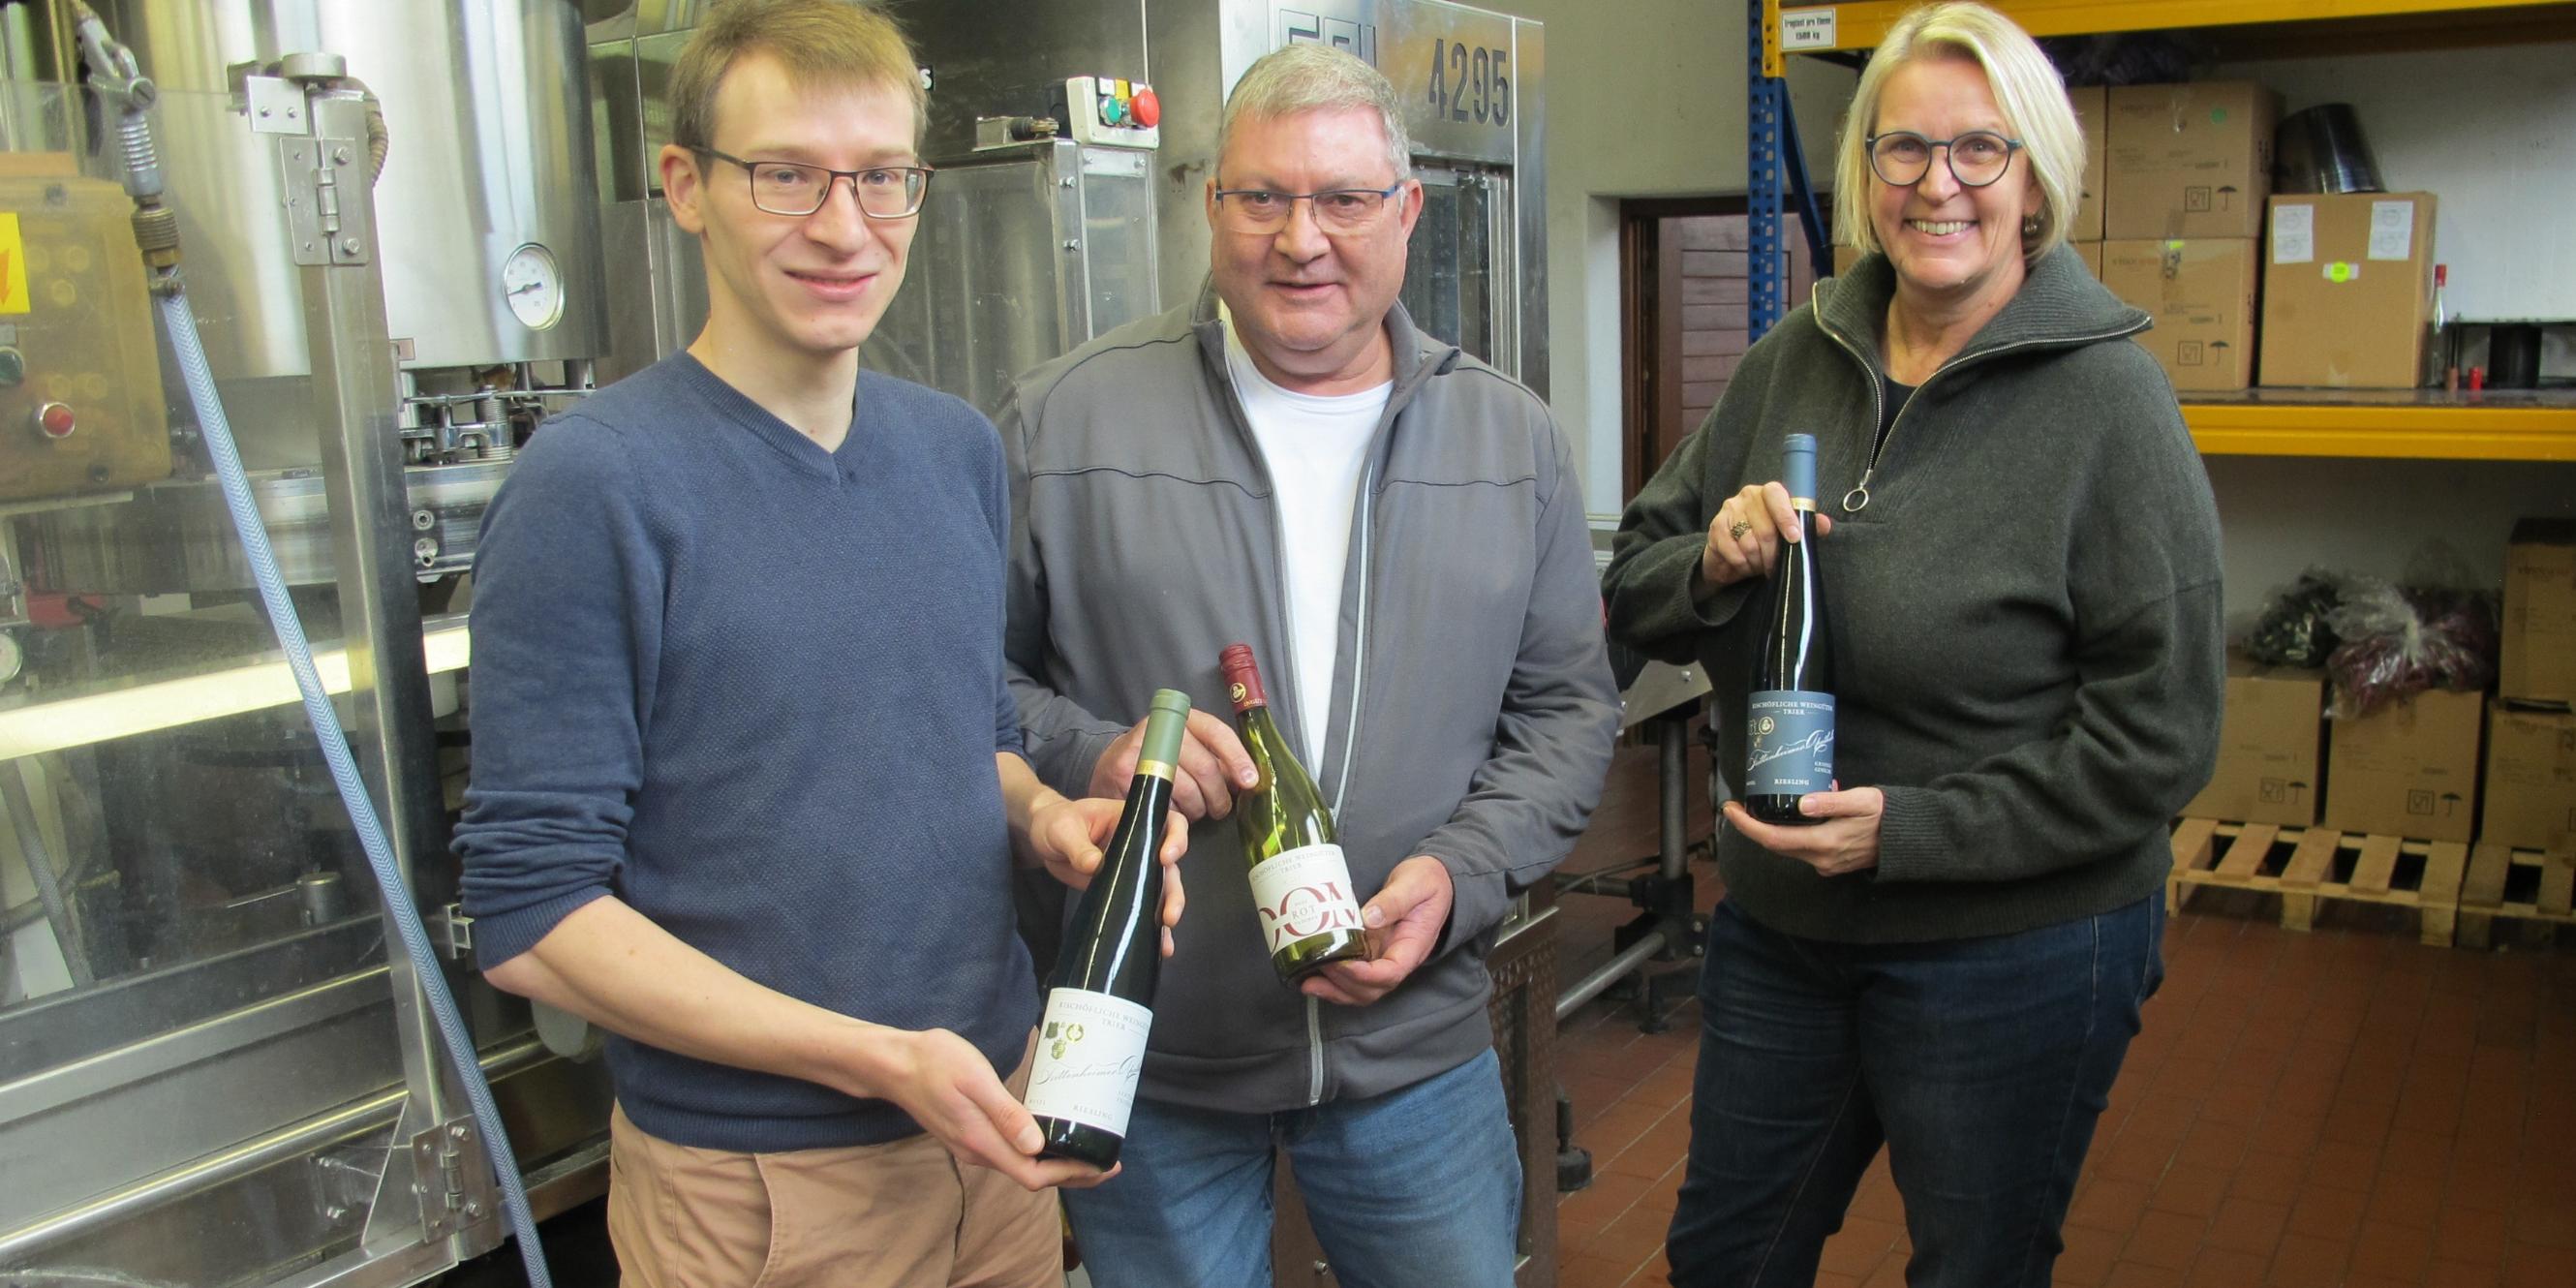 Lukas Böhm, Johannes Becker und Julia Lübcke mit Weinflaschen der Bischöflichen Weingüter in Trier. (vlnr.)